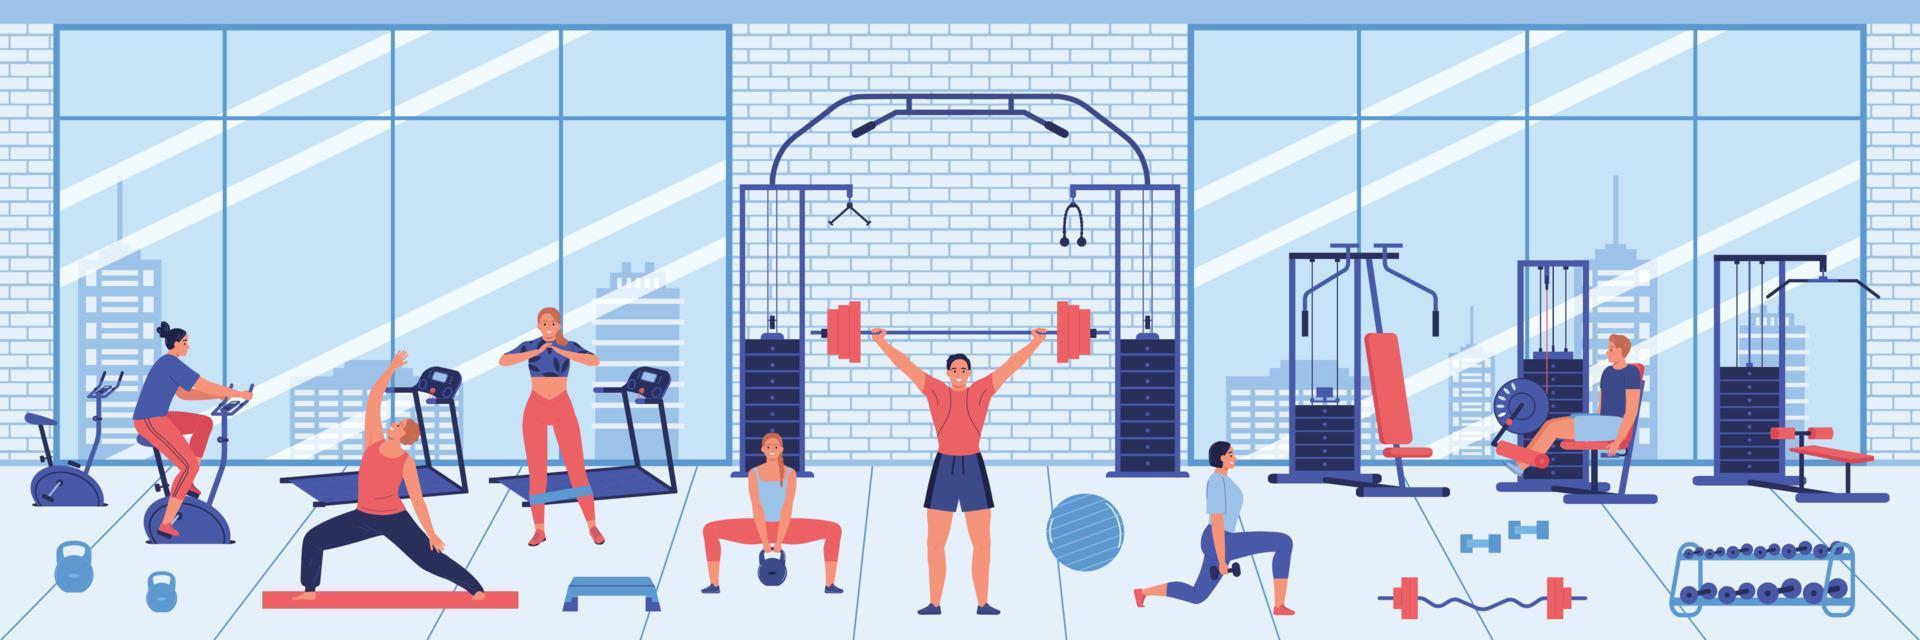 illustration horizontale intérieure de la salle de gym vecteur